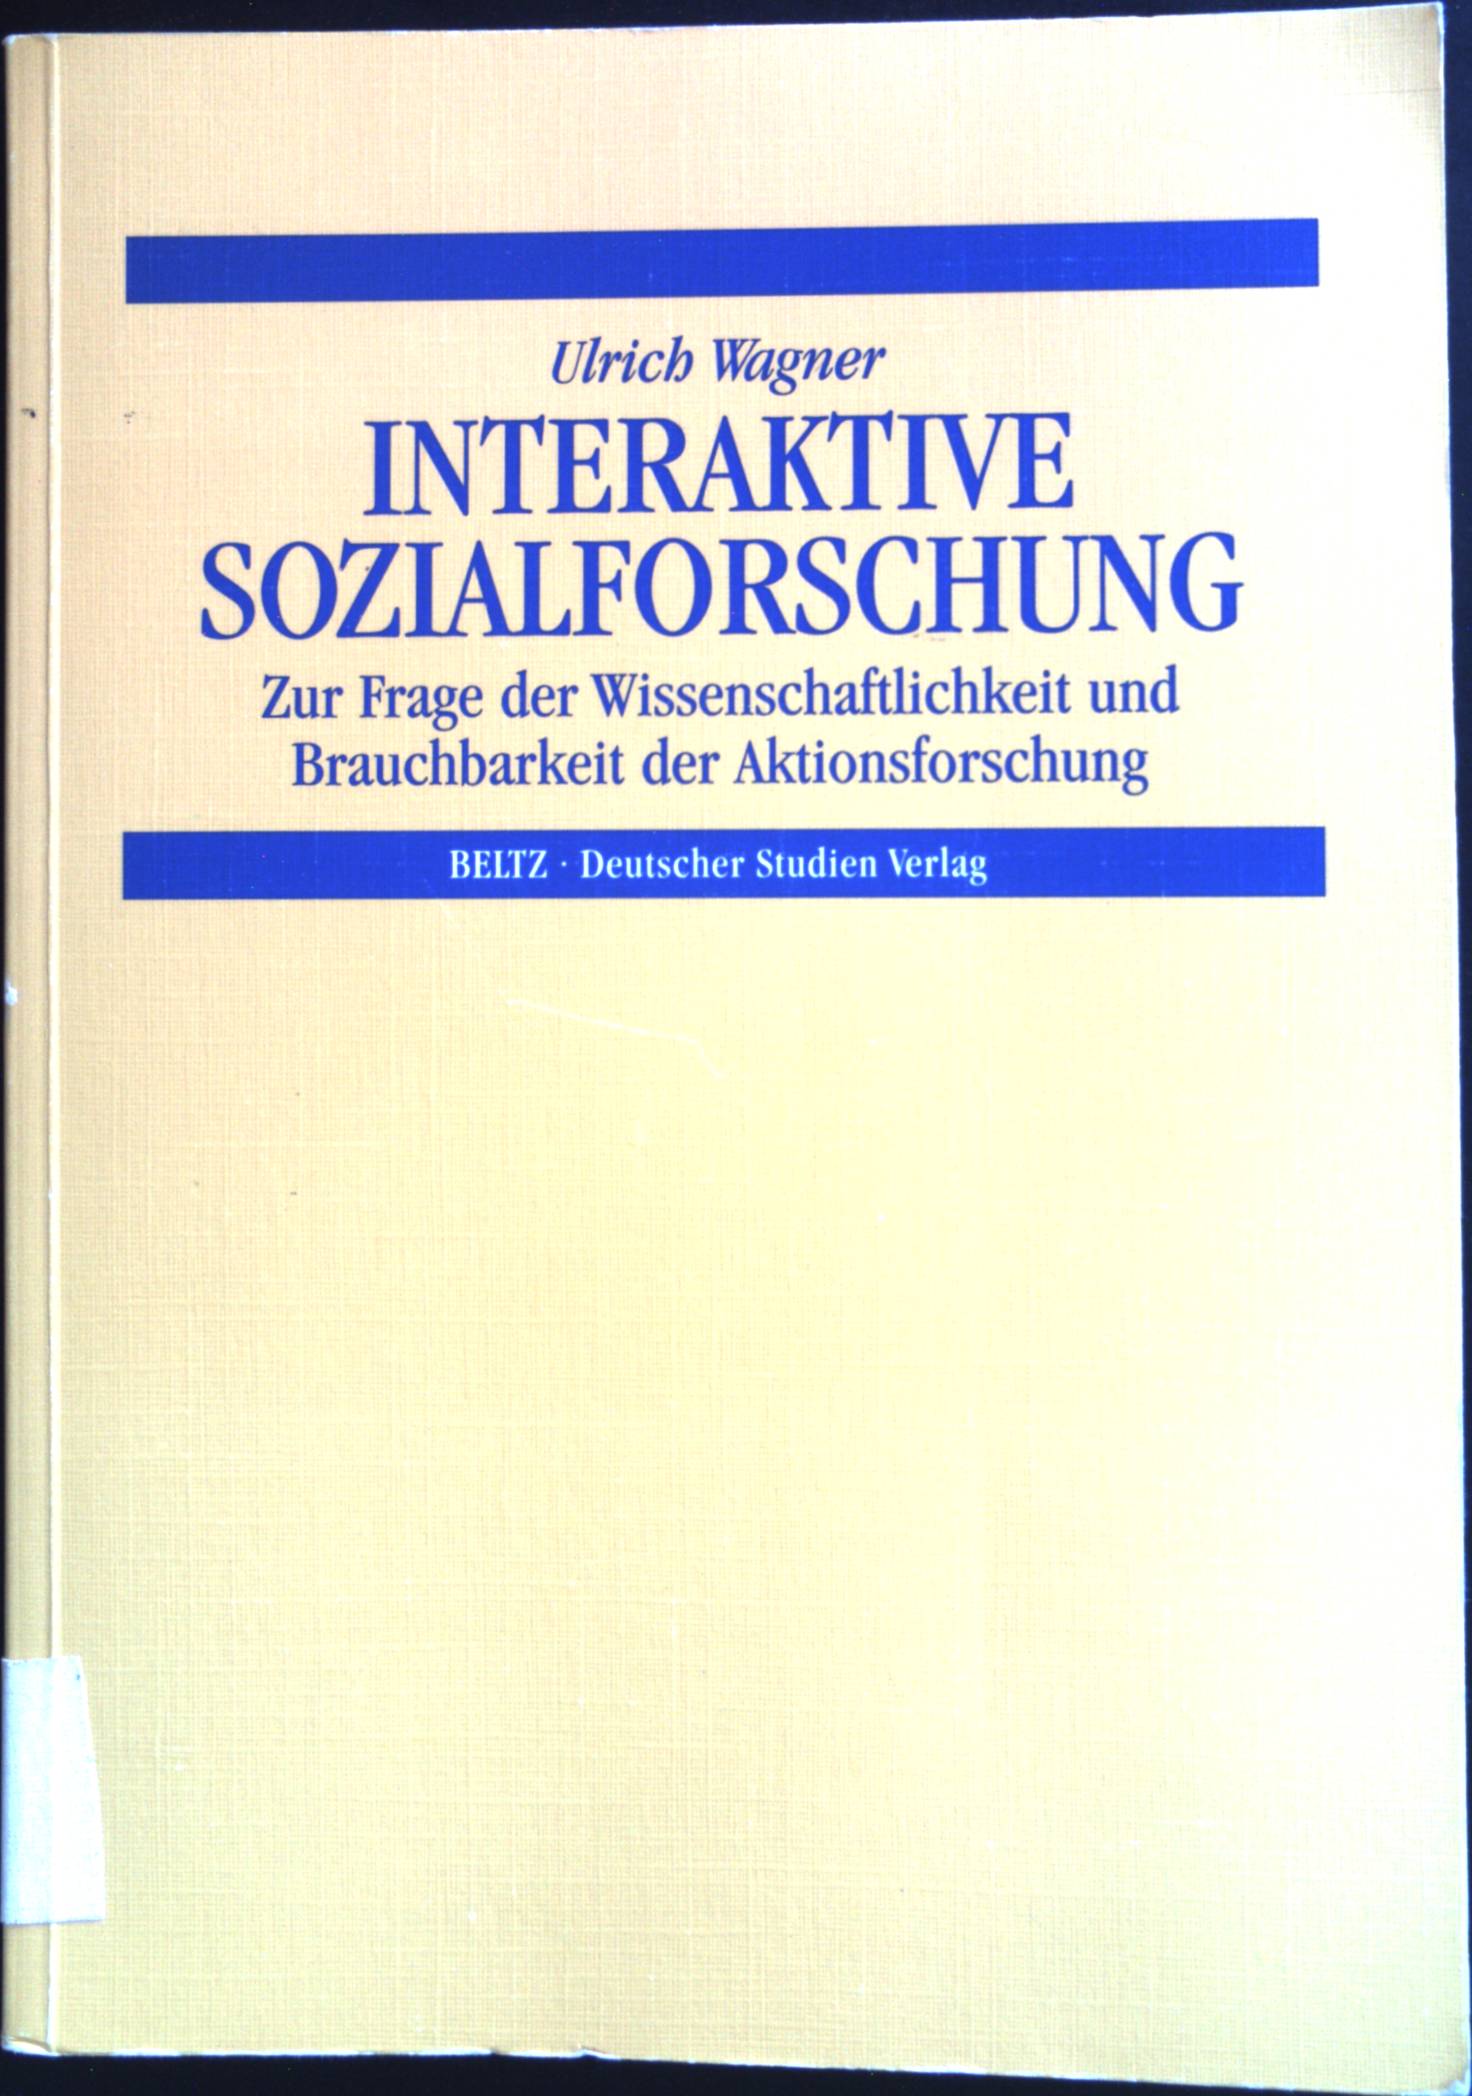 Interaktive Sozialforschung : zur Frage der Wissenschaftlichkeit und Brauchbarkeit der Aktionsforschung. - Wagner, Ulrich